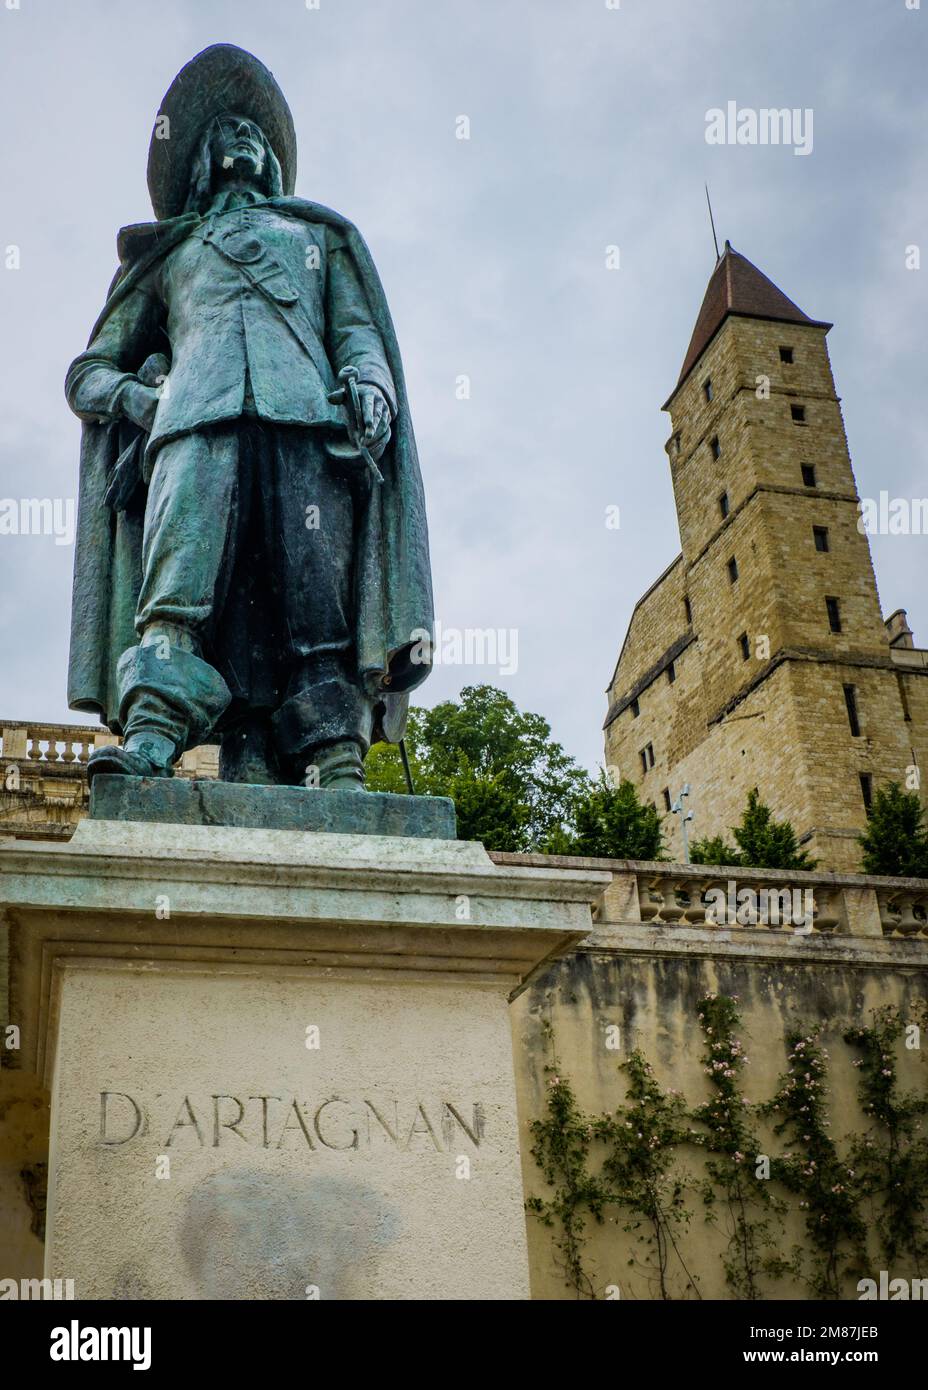 Statue du mousquetaire d'Artagnan près de l'Escalier Monumental à Auch, dans le sud de la France (Gers) Banque D'Images